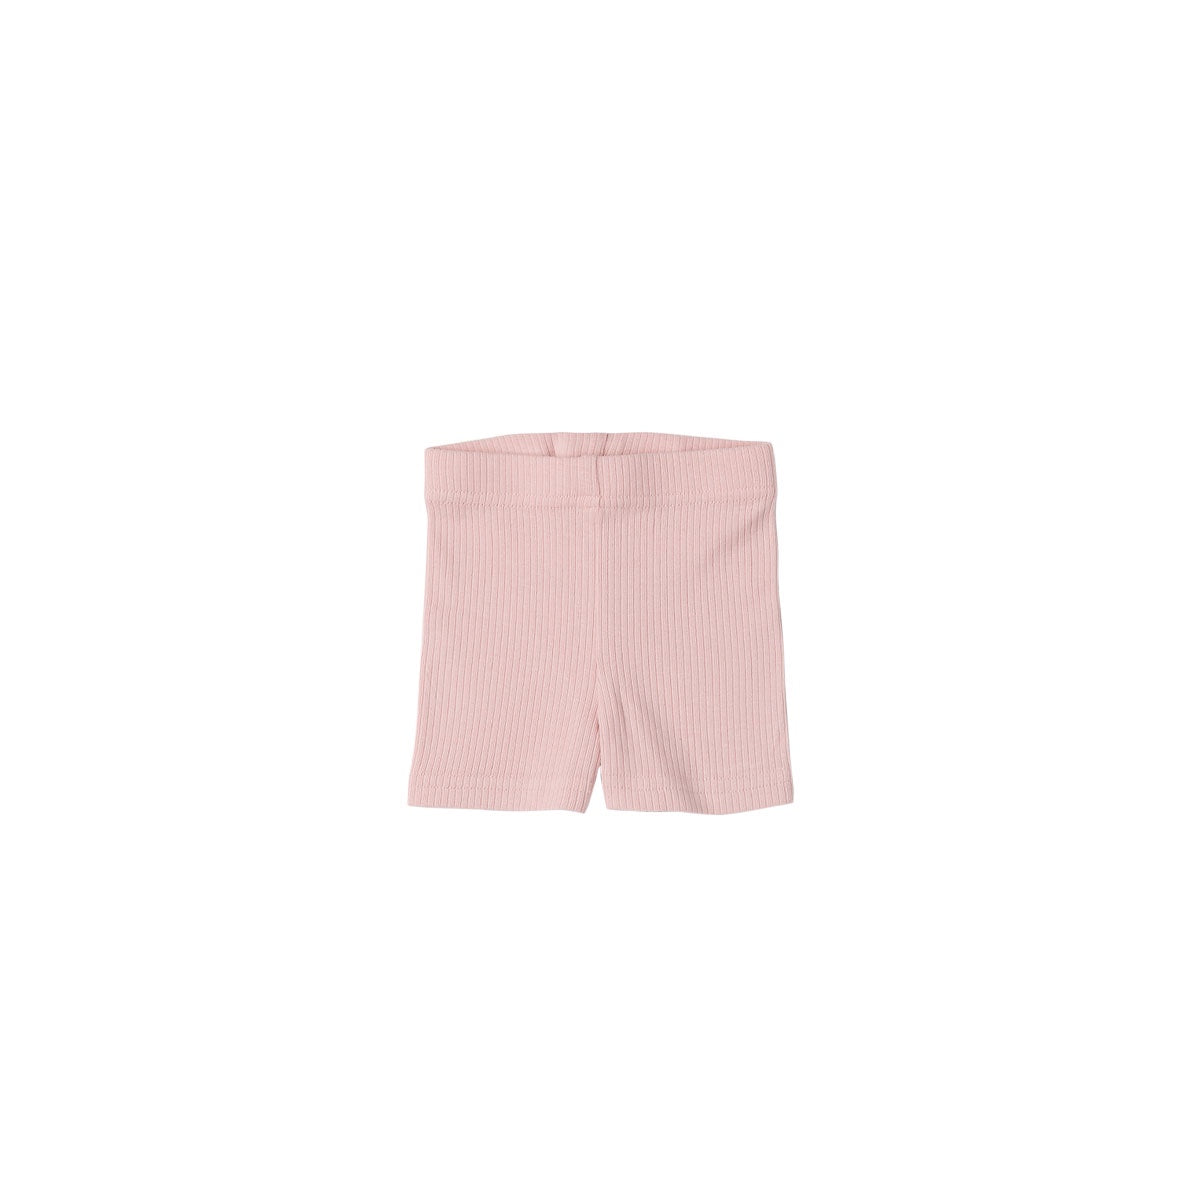 Ivy Bike Shorts - Rose Blush